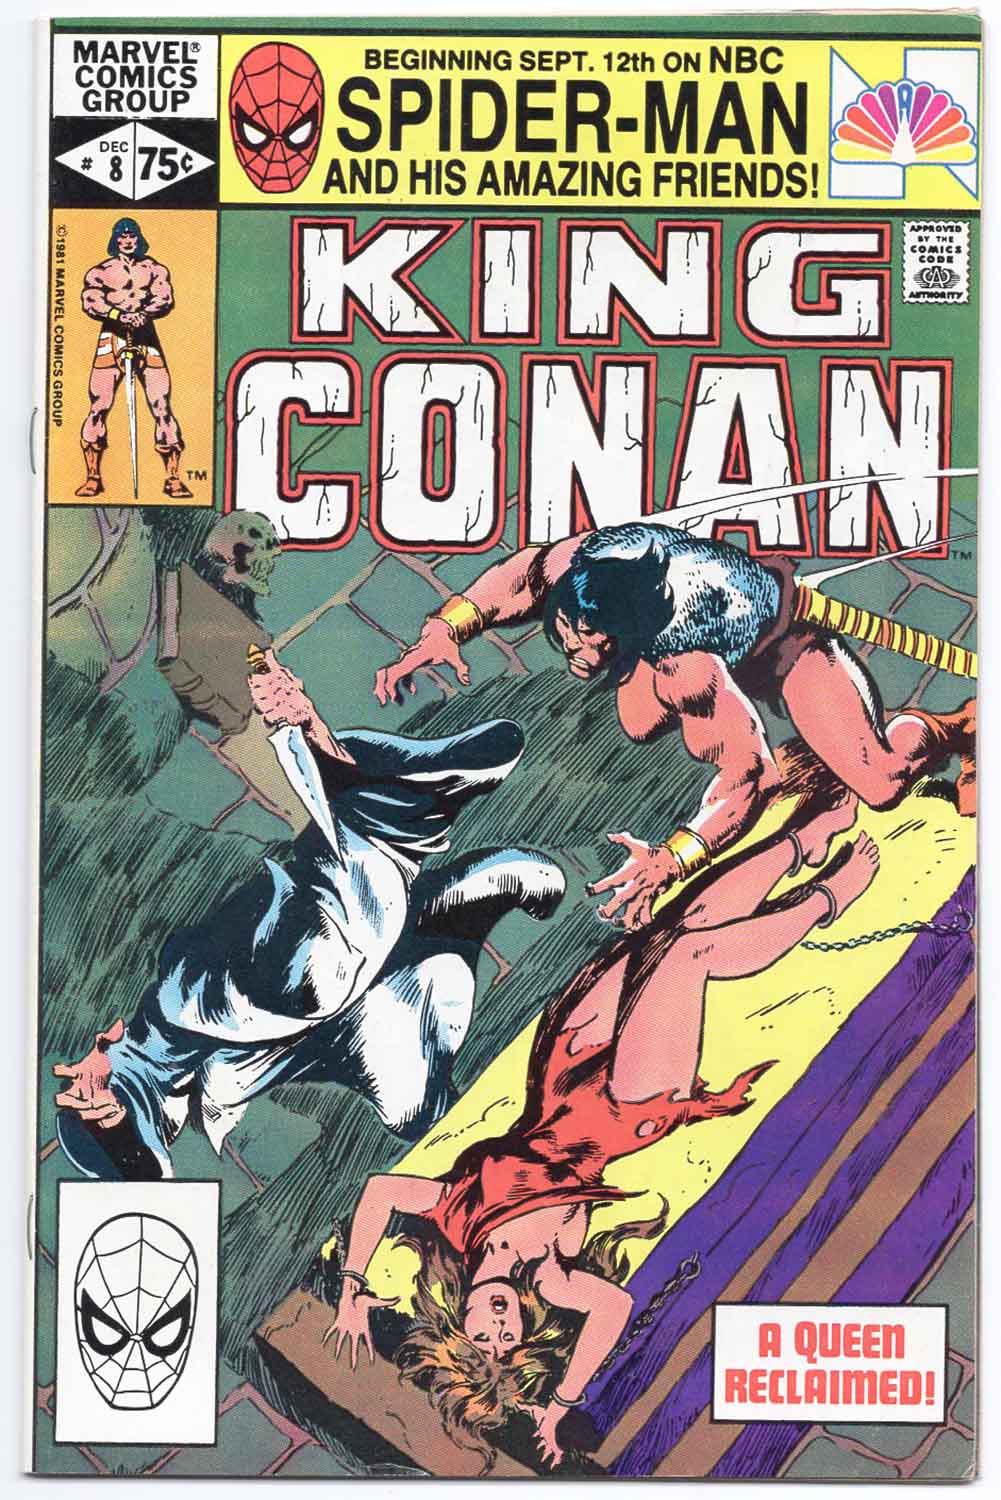 King Conan #8